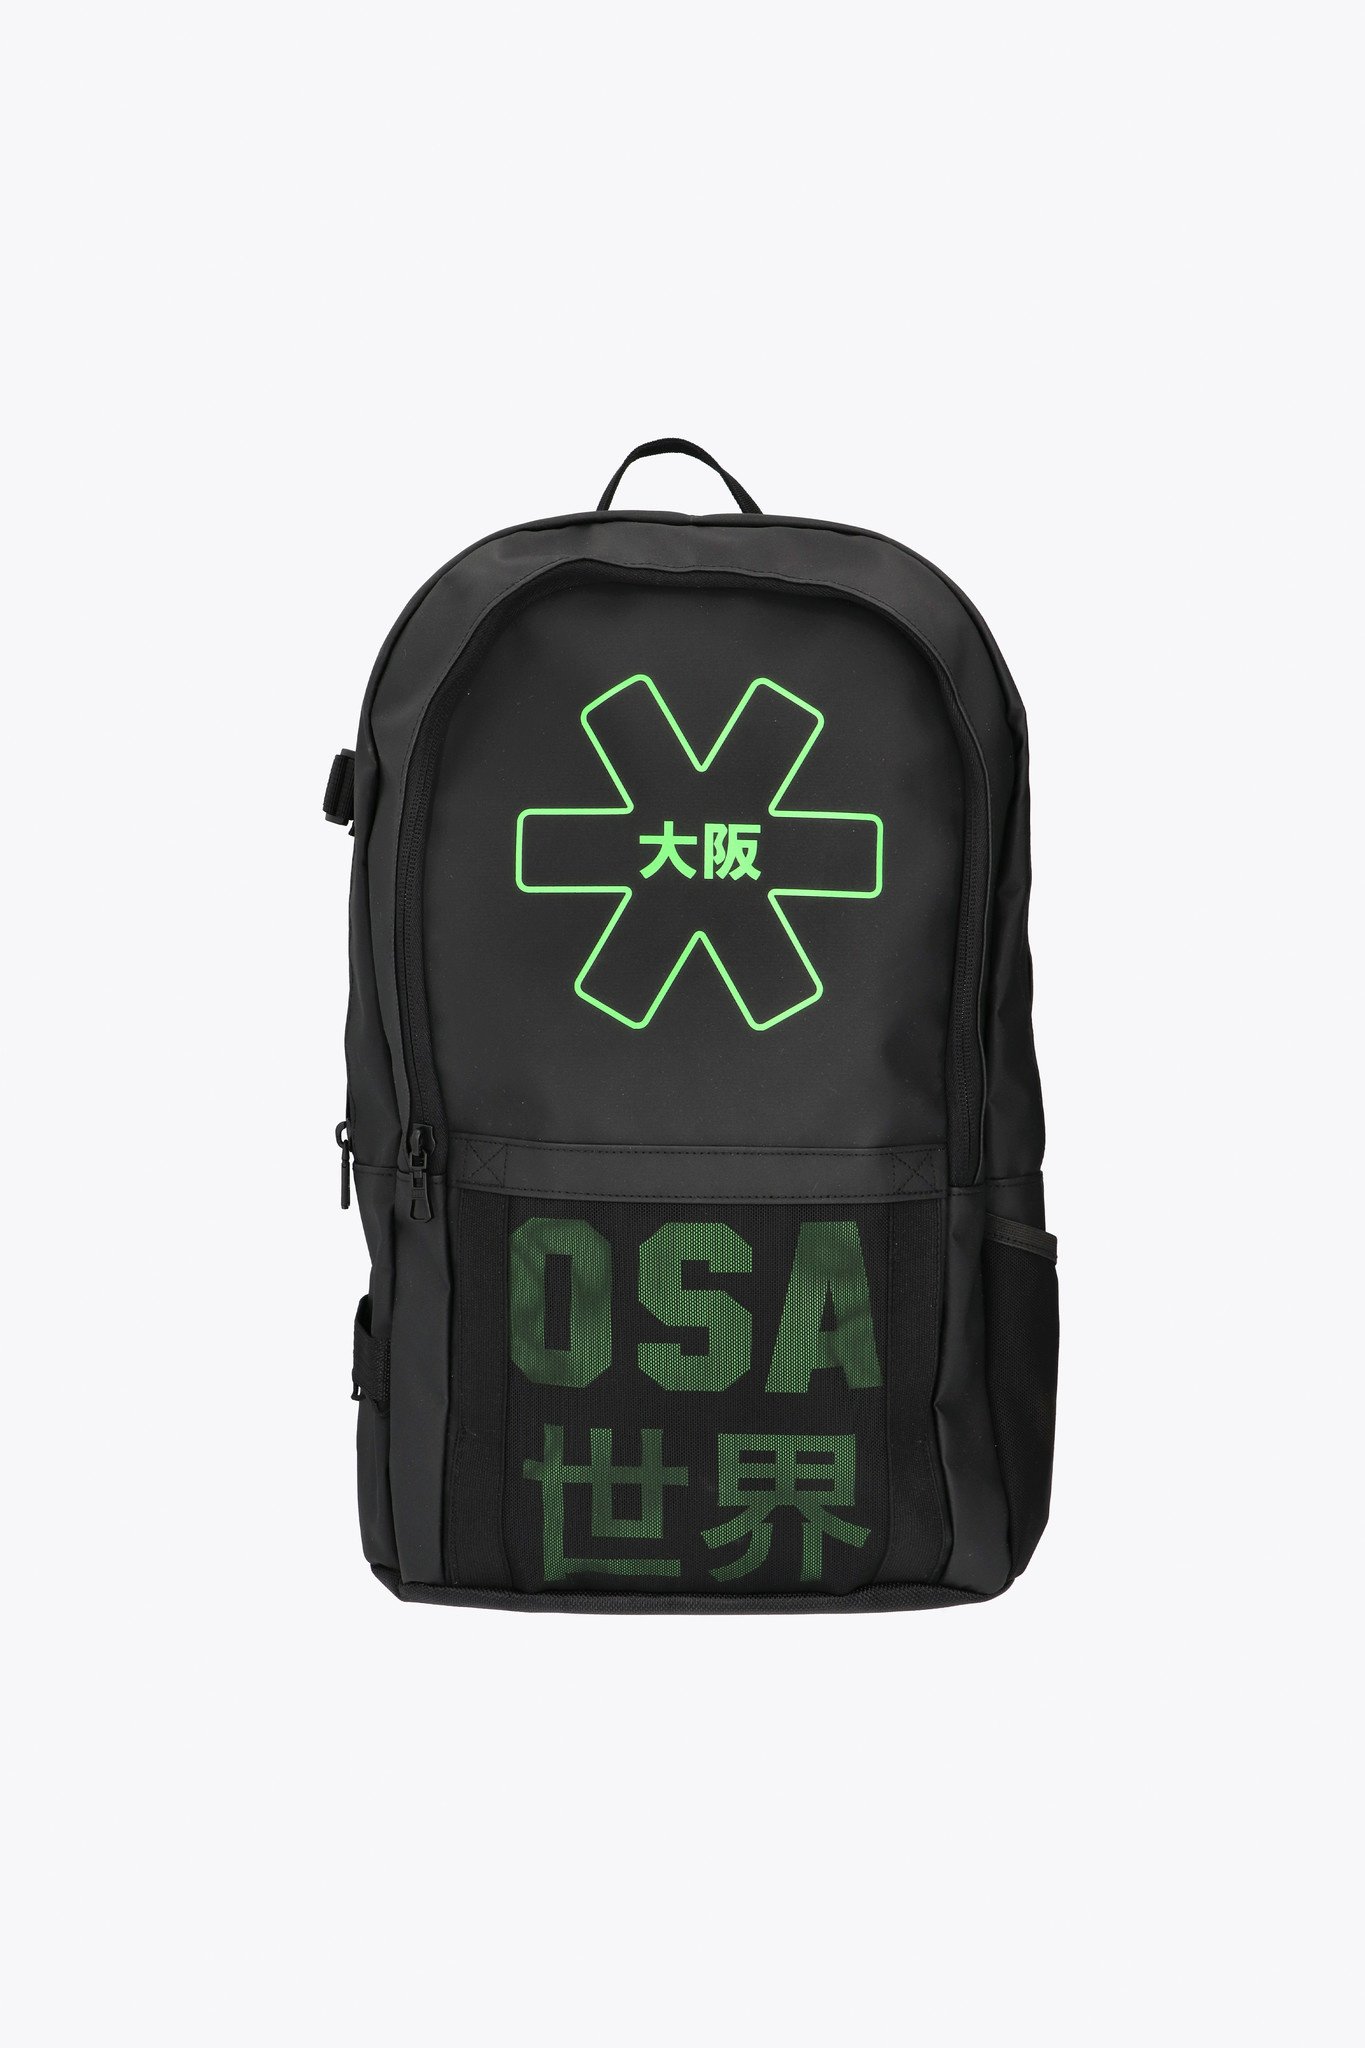 Osaka Pro Tour Backpack Large